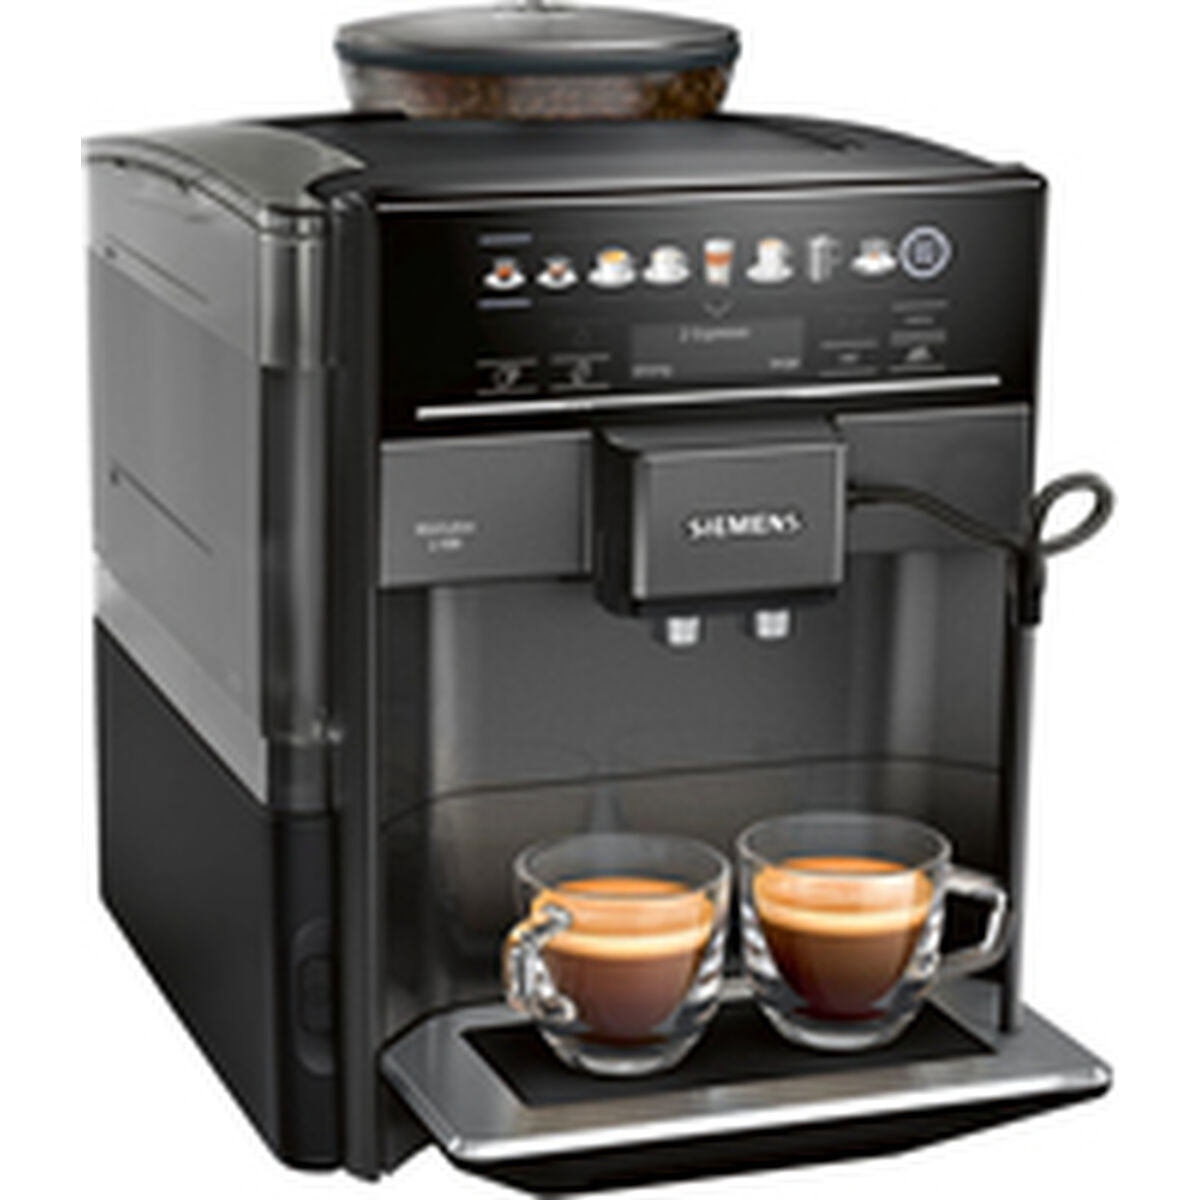 Superautomatische Kaffeemaschine Siemens AG s100 Schwarz 1500 W 15 bar 1,7 L - CA International  